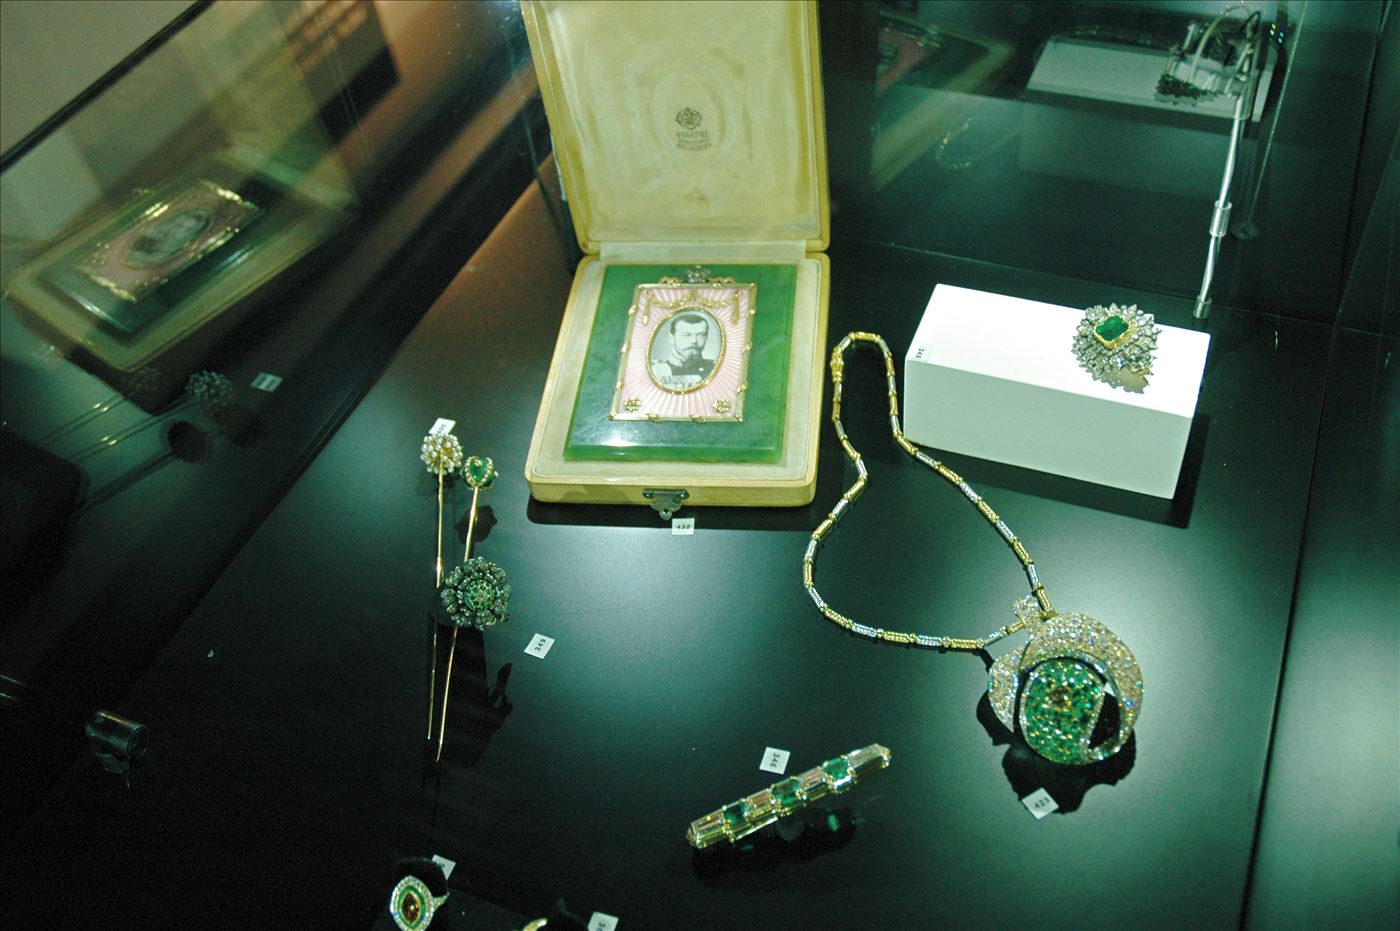 גלרייה - תערוכת תכשיטים במוזיאון - אבנר צופיוף 31.5.2006, 1 מתוך 22